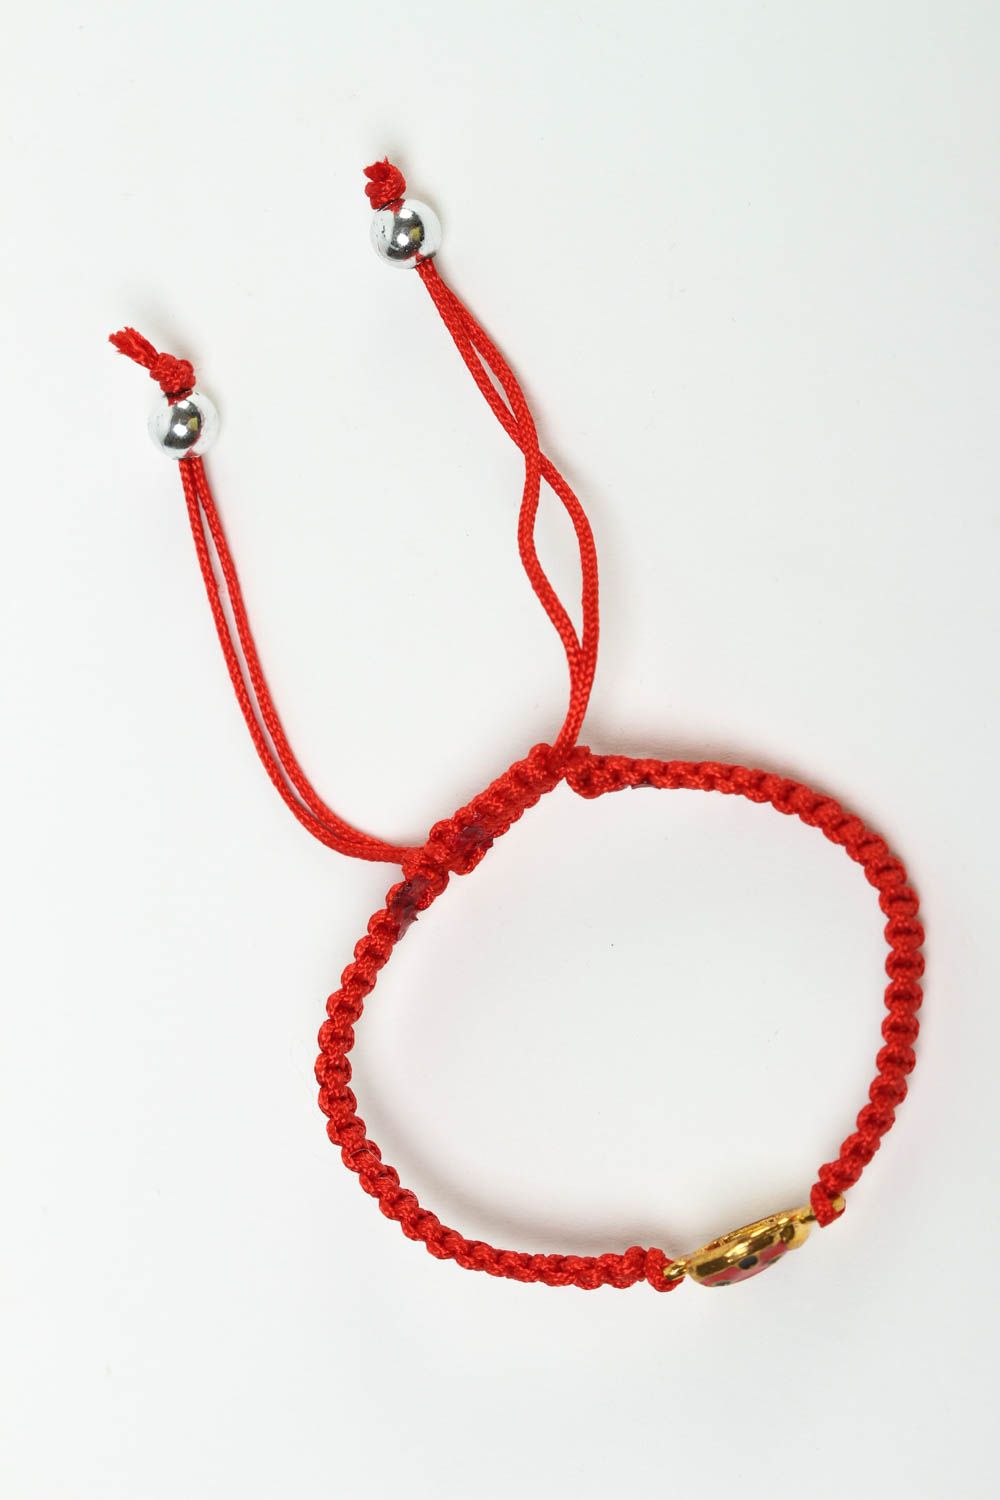 Браслет из шнура красный бижутерия ручной работы модное украшение плетеное фото 2